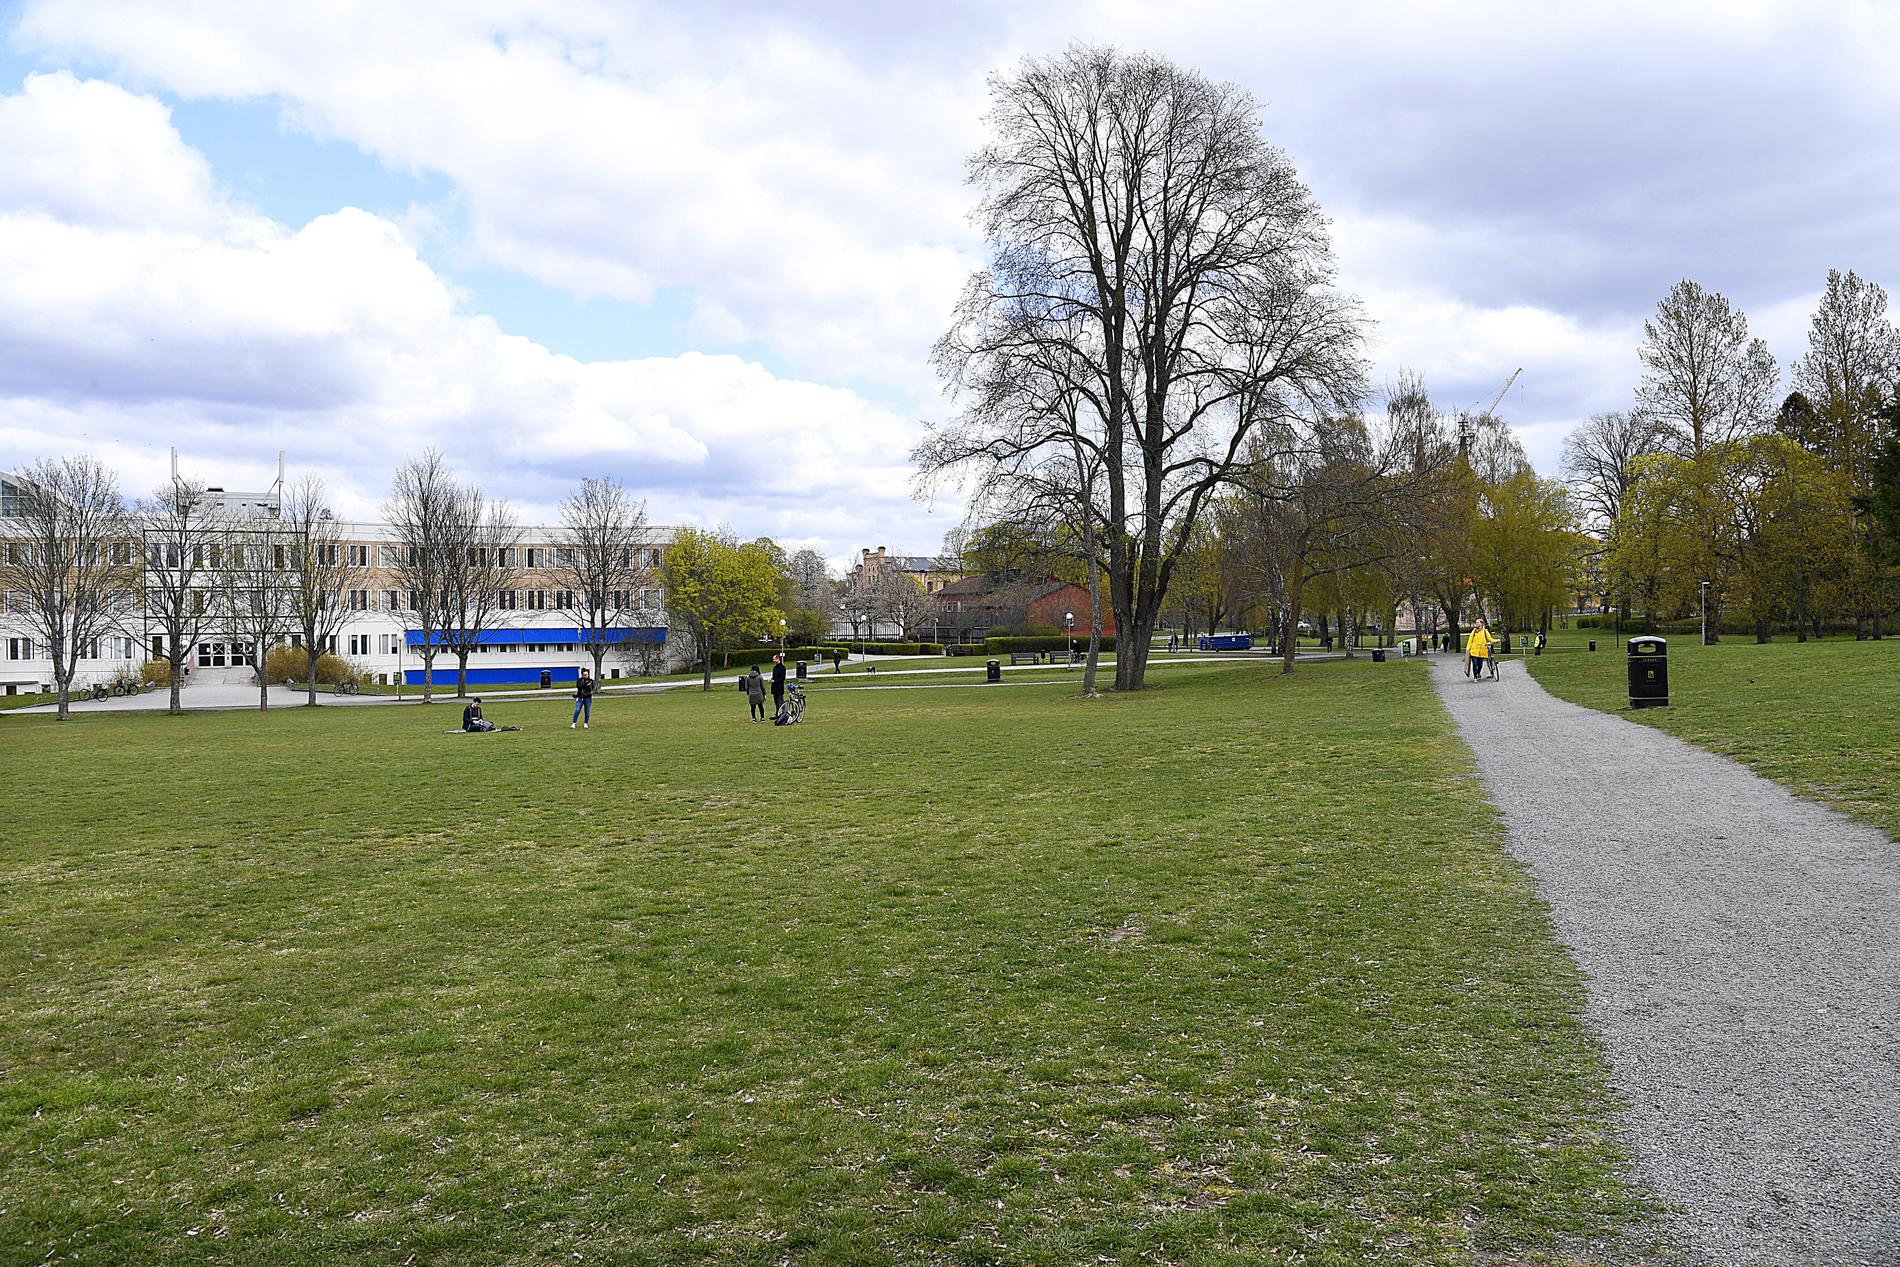 Ekonomikumparken är en av de ställen där vistelseförbud  kommer råda omkring valborg. På bilden syns parken på valborgsmässoafton 2020. Ekonomikumparken brukar normalt locka runt 50 000 personer på valborgsmässoafton.